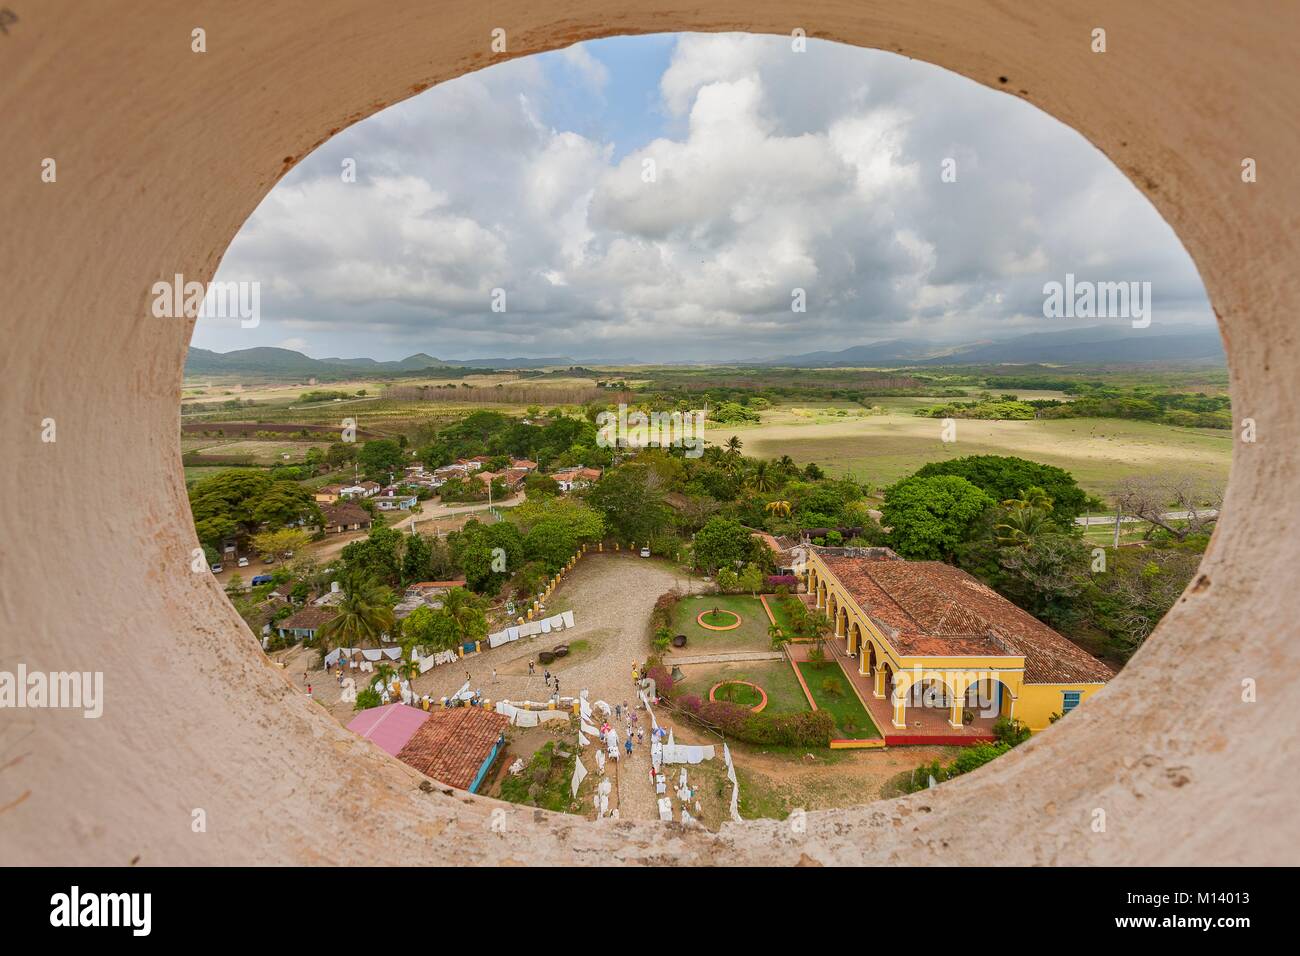 La province de Sancti Spiritus, Cuba, Trinidad, ville classée au Patrimoine Mondial par l'UNESCO, Valle de los Ingenios, la tour Manaca Iznaga Banque D'Images